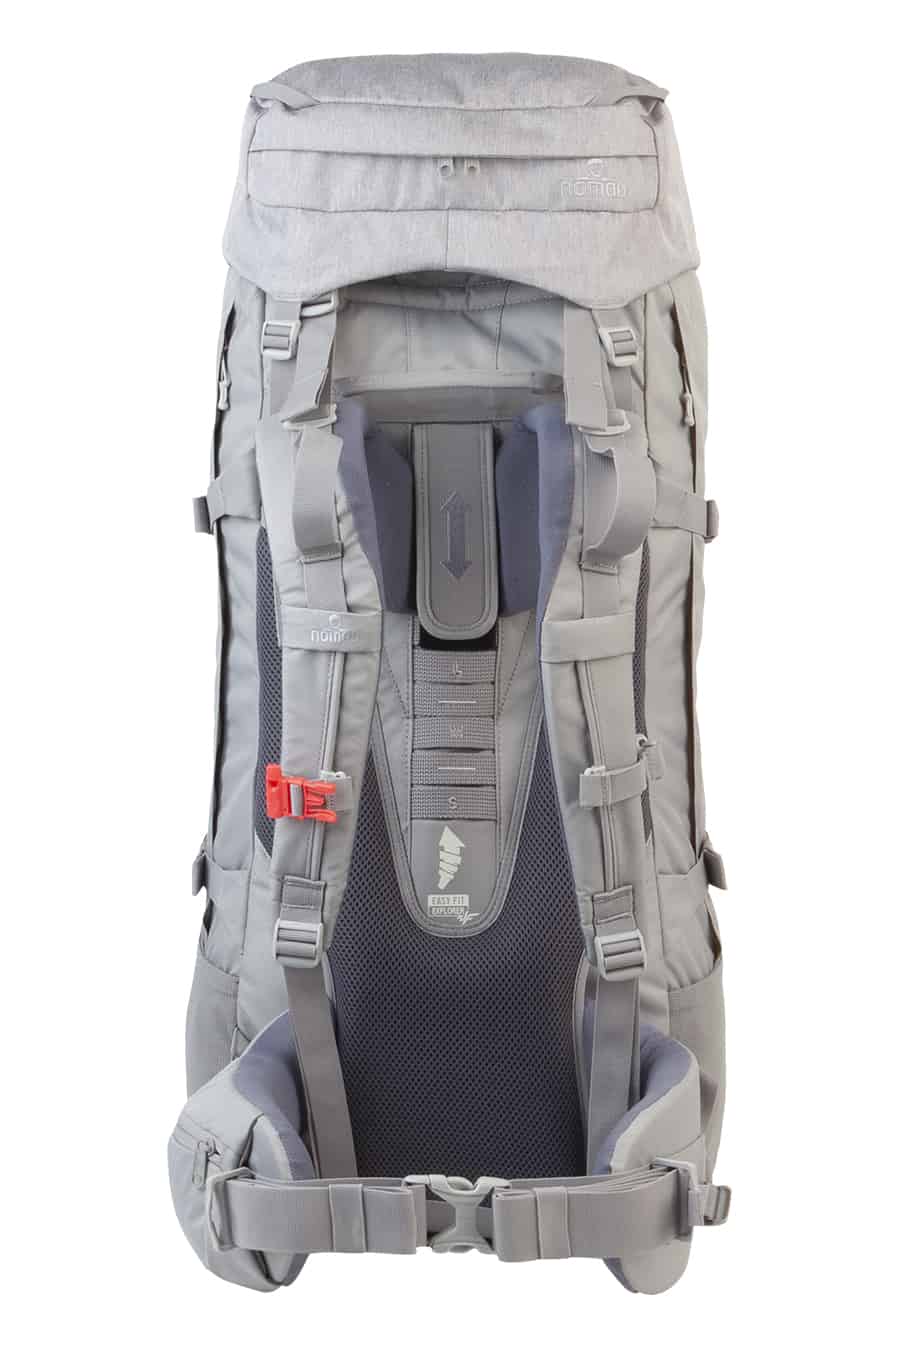 Nomad Karoo SF 55L Mist Grey Backpack